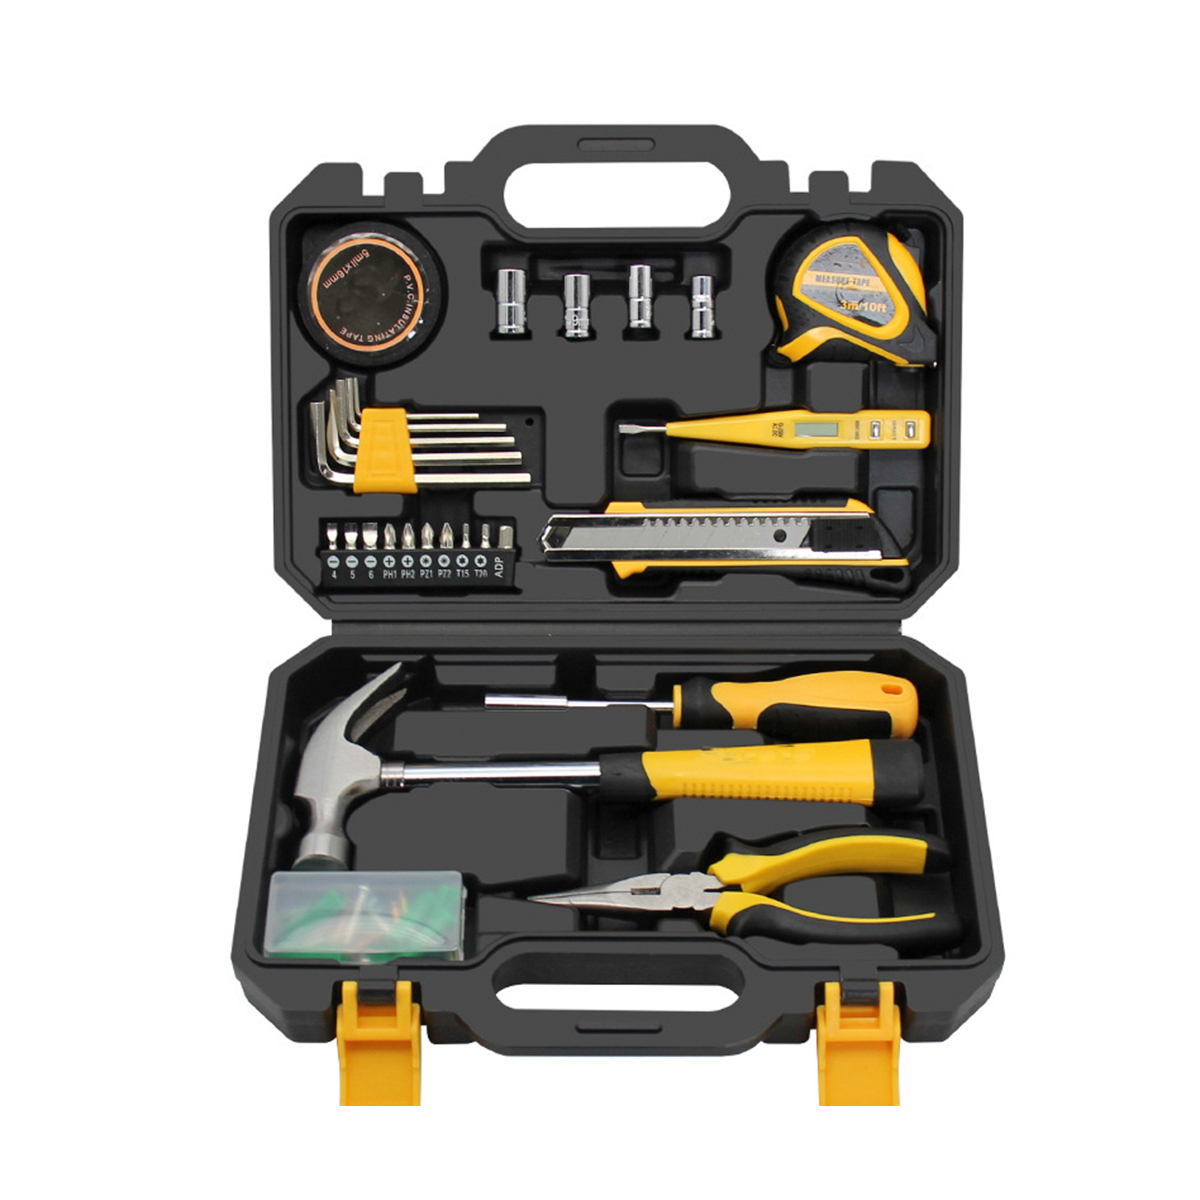 Caja de herramientas para el hogar de 28 uds, kit de herramientas multifunción de plástico resistente al agua para electricista